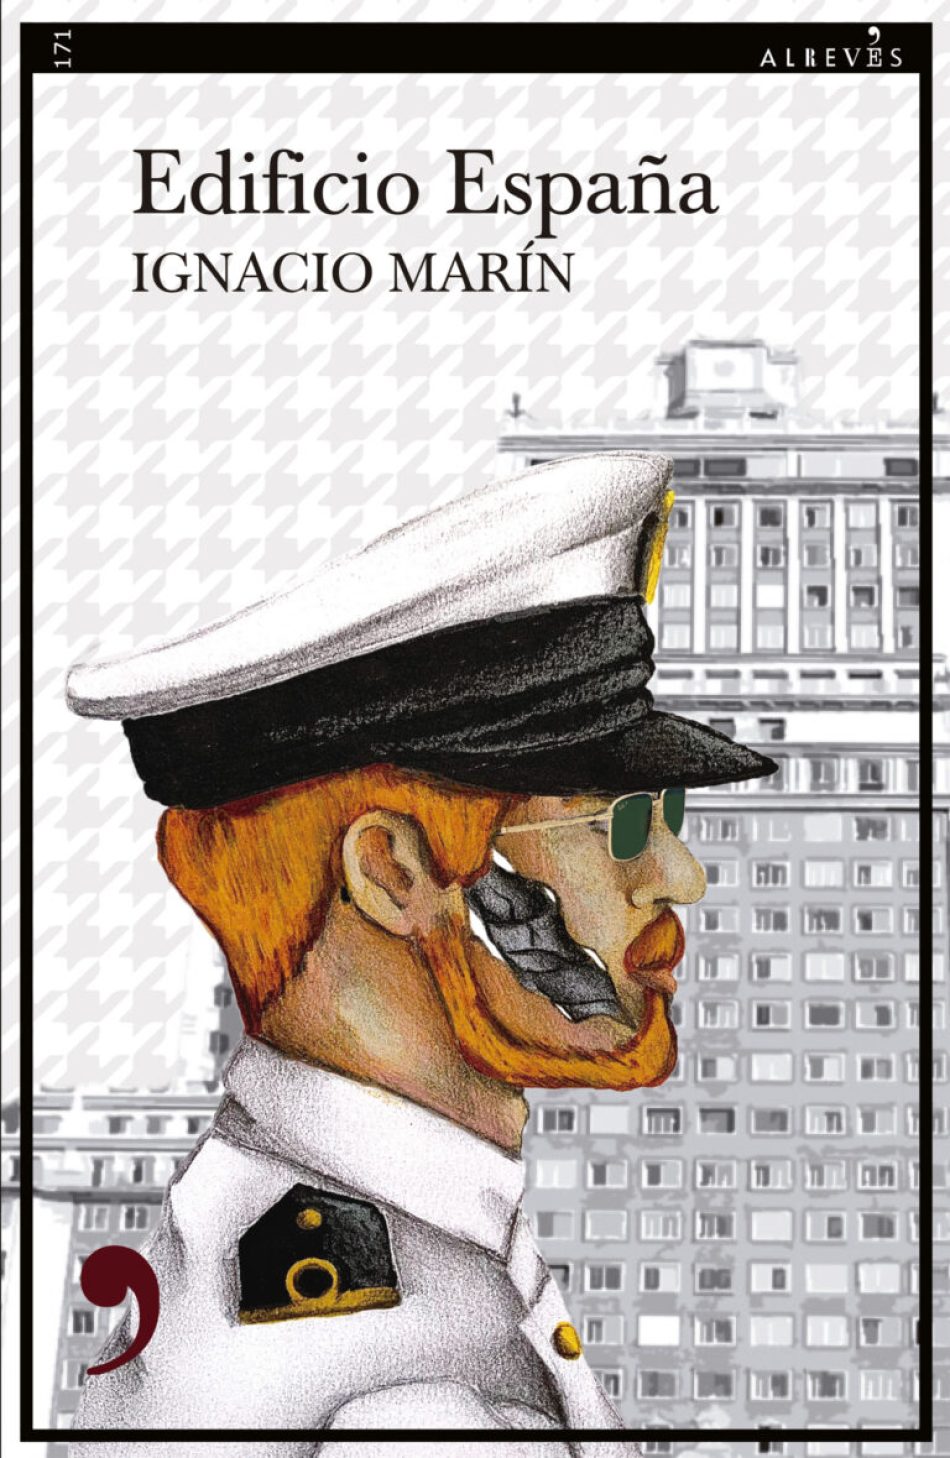 La editorial Alrevés reedita “Edificio España”, la primera novela de Ignacio Marín, director de Vallekas Negra